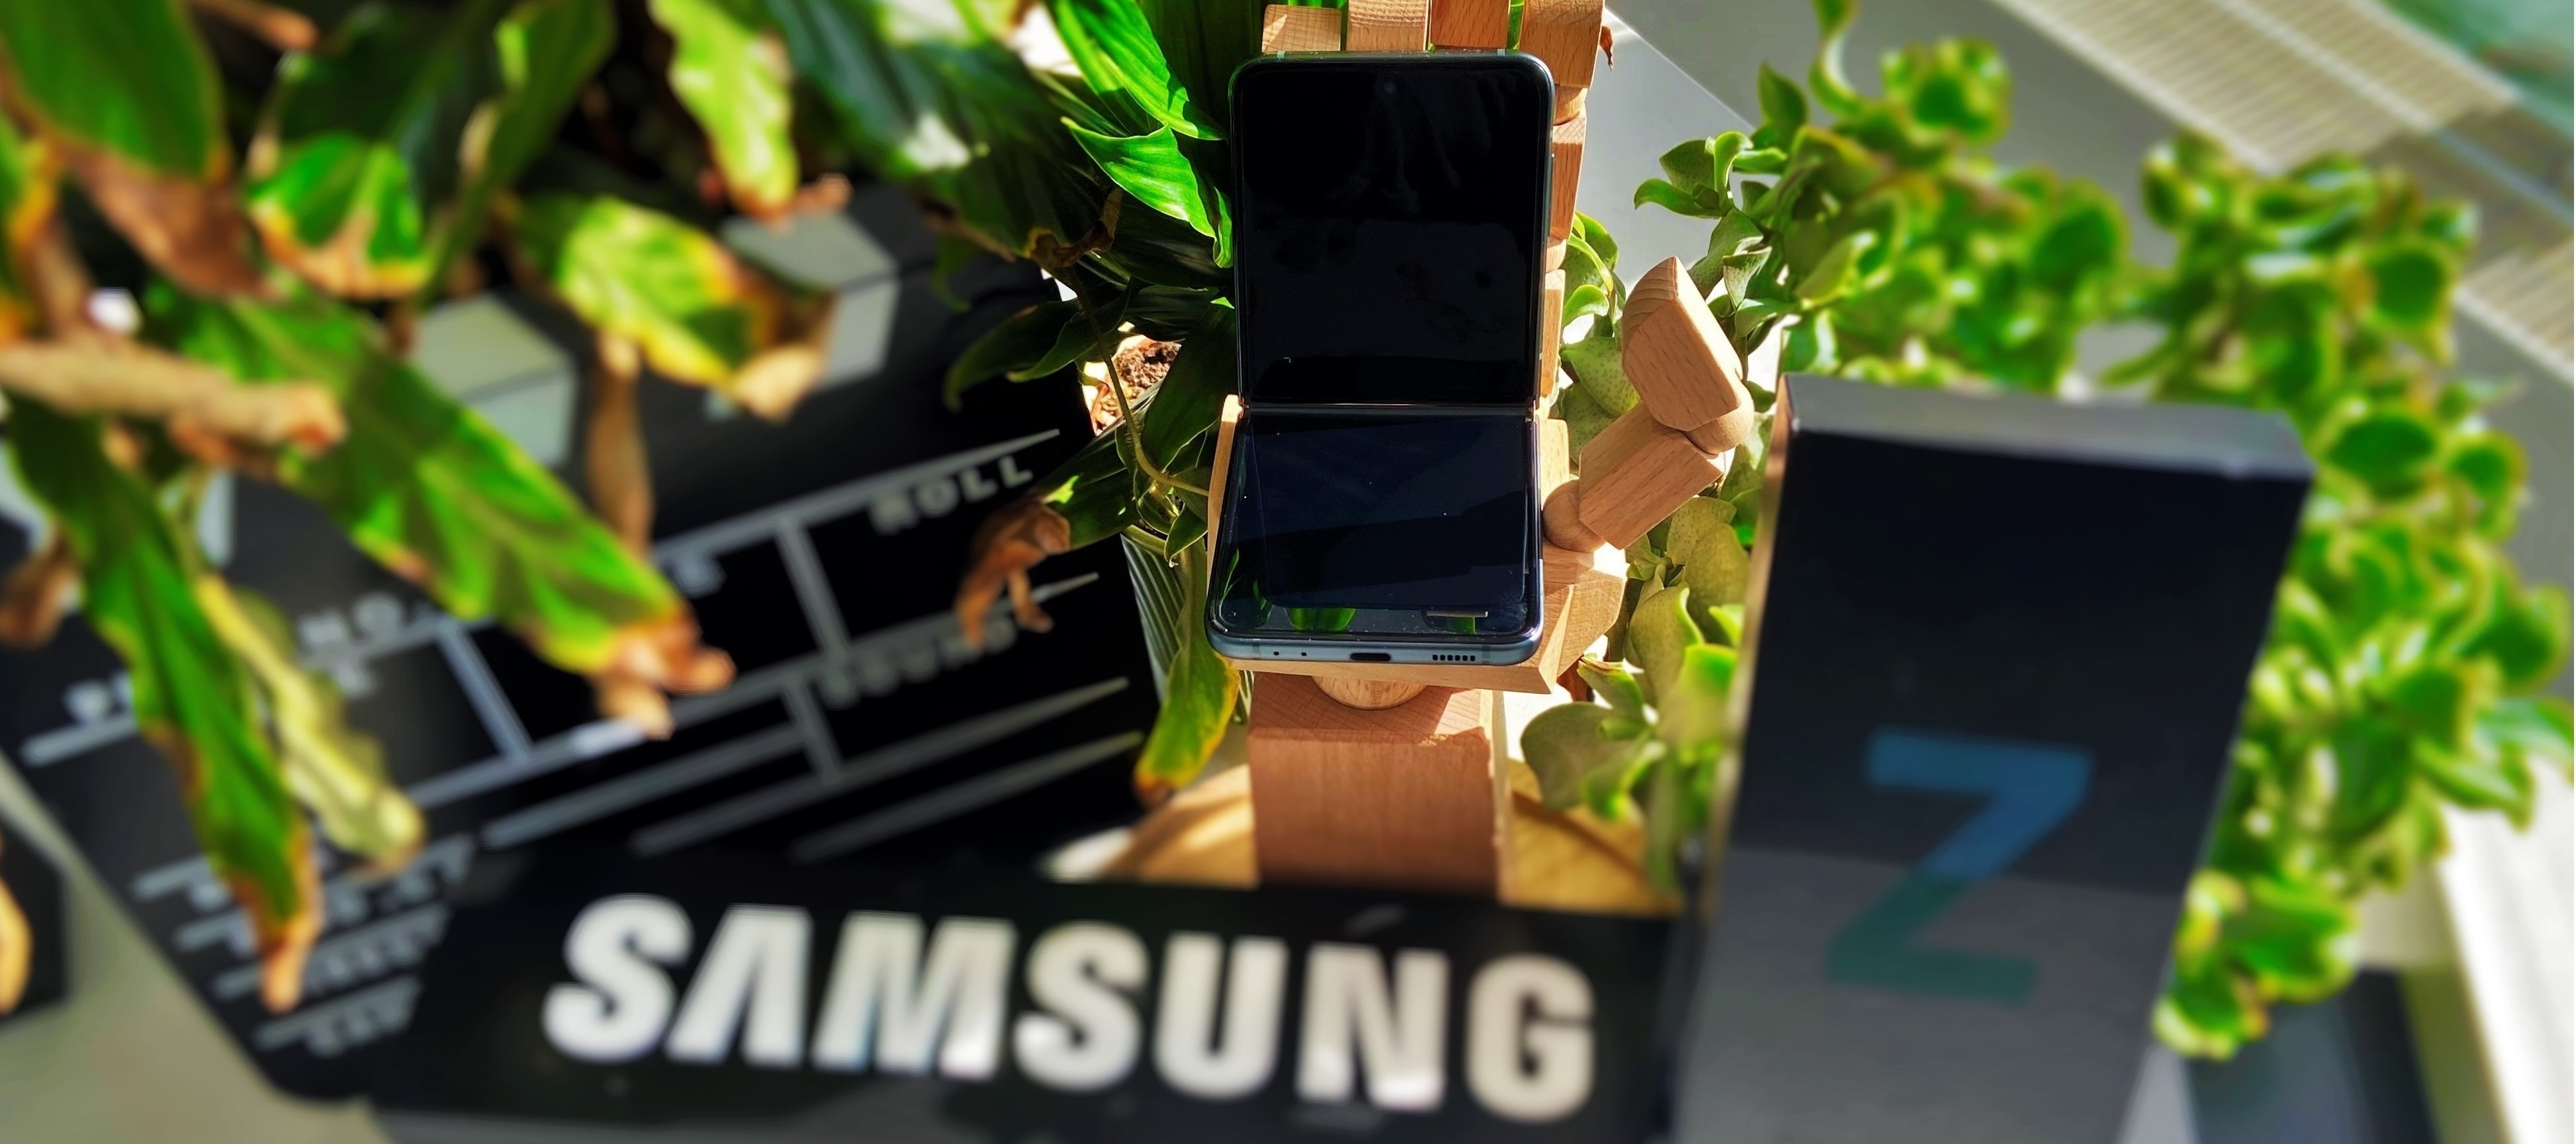 Samsung Galaxy Z Flip3 - dein Testgerät zum Falten!